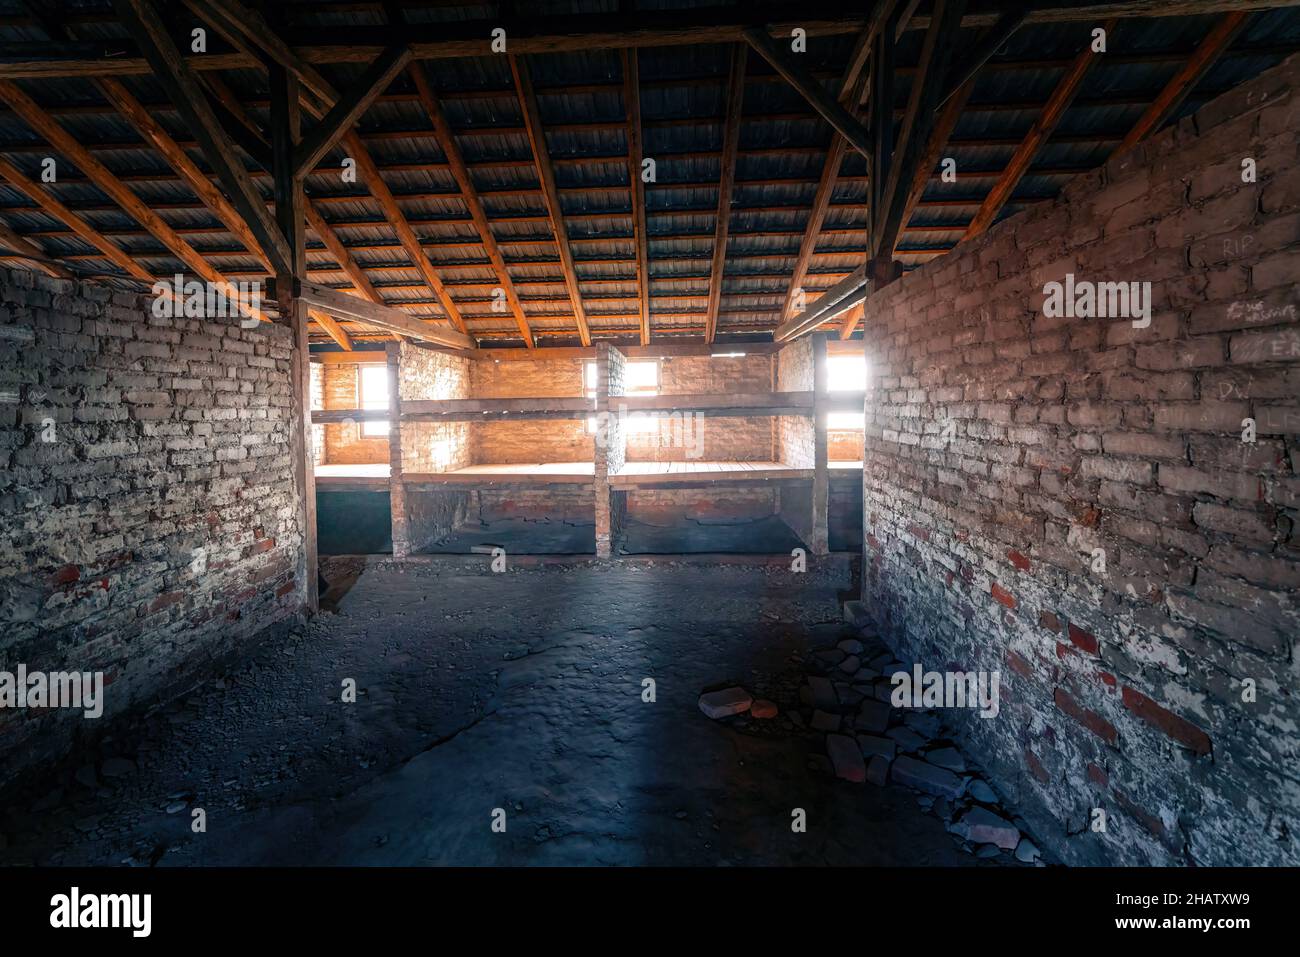 Prisioneros Barracks interior en Auschwitz II - Birkenau, antiguo campo de concentración y exterminio nazi alemán - Polonia Foto de stock